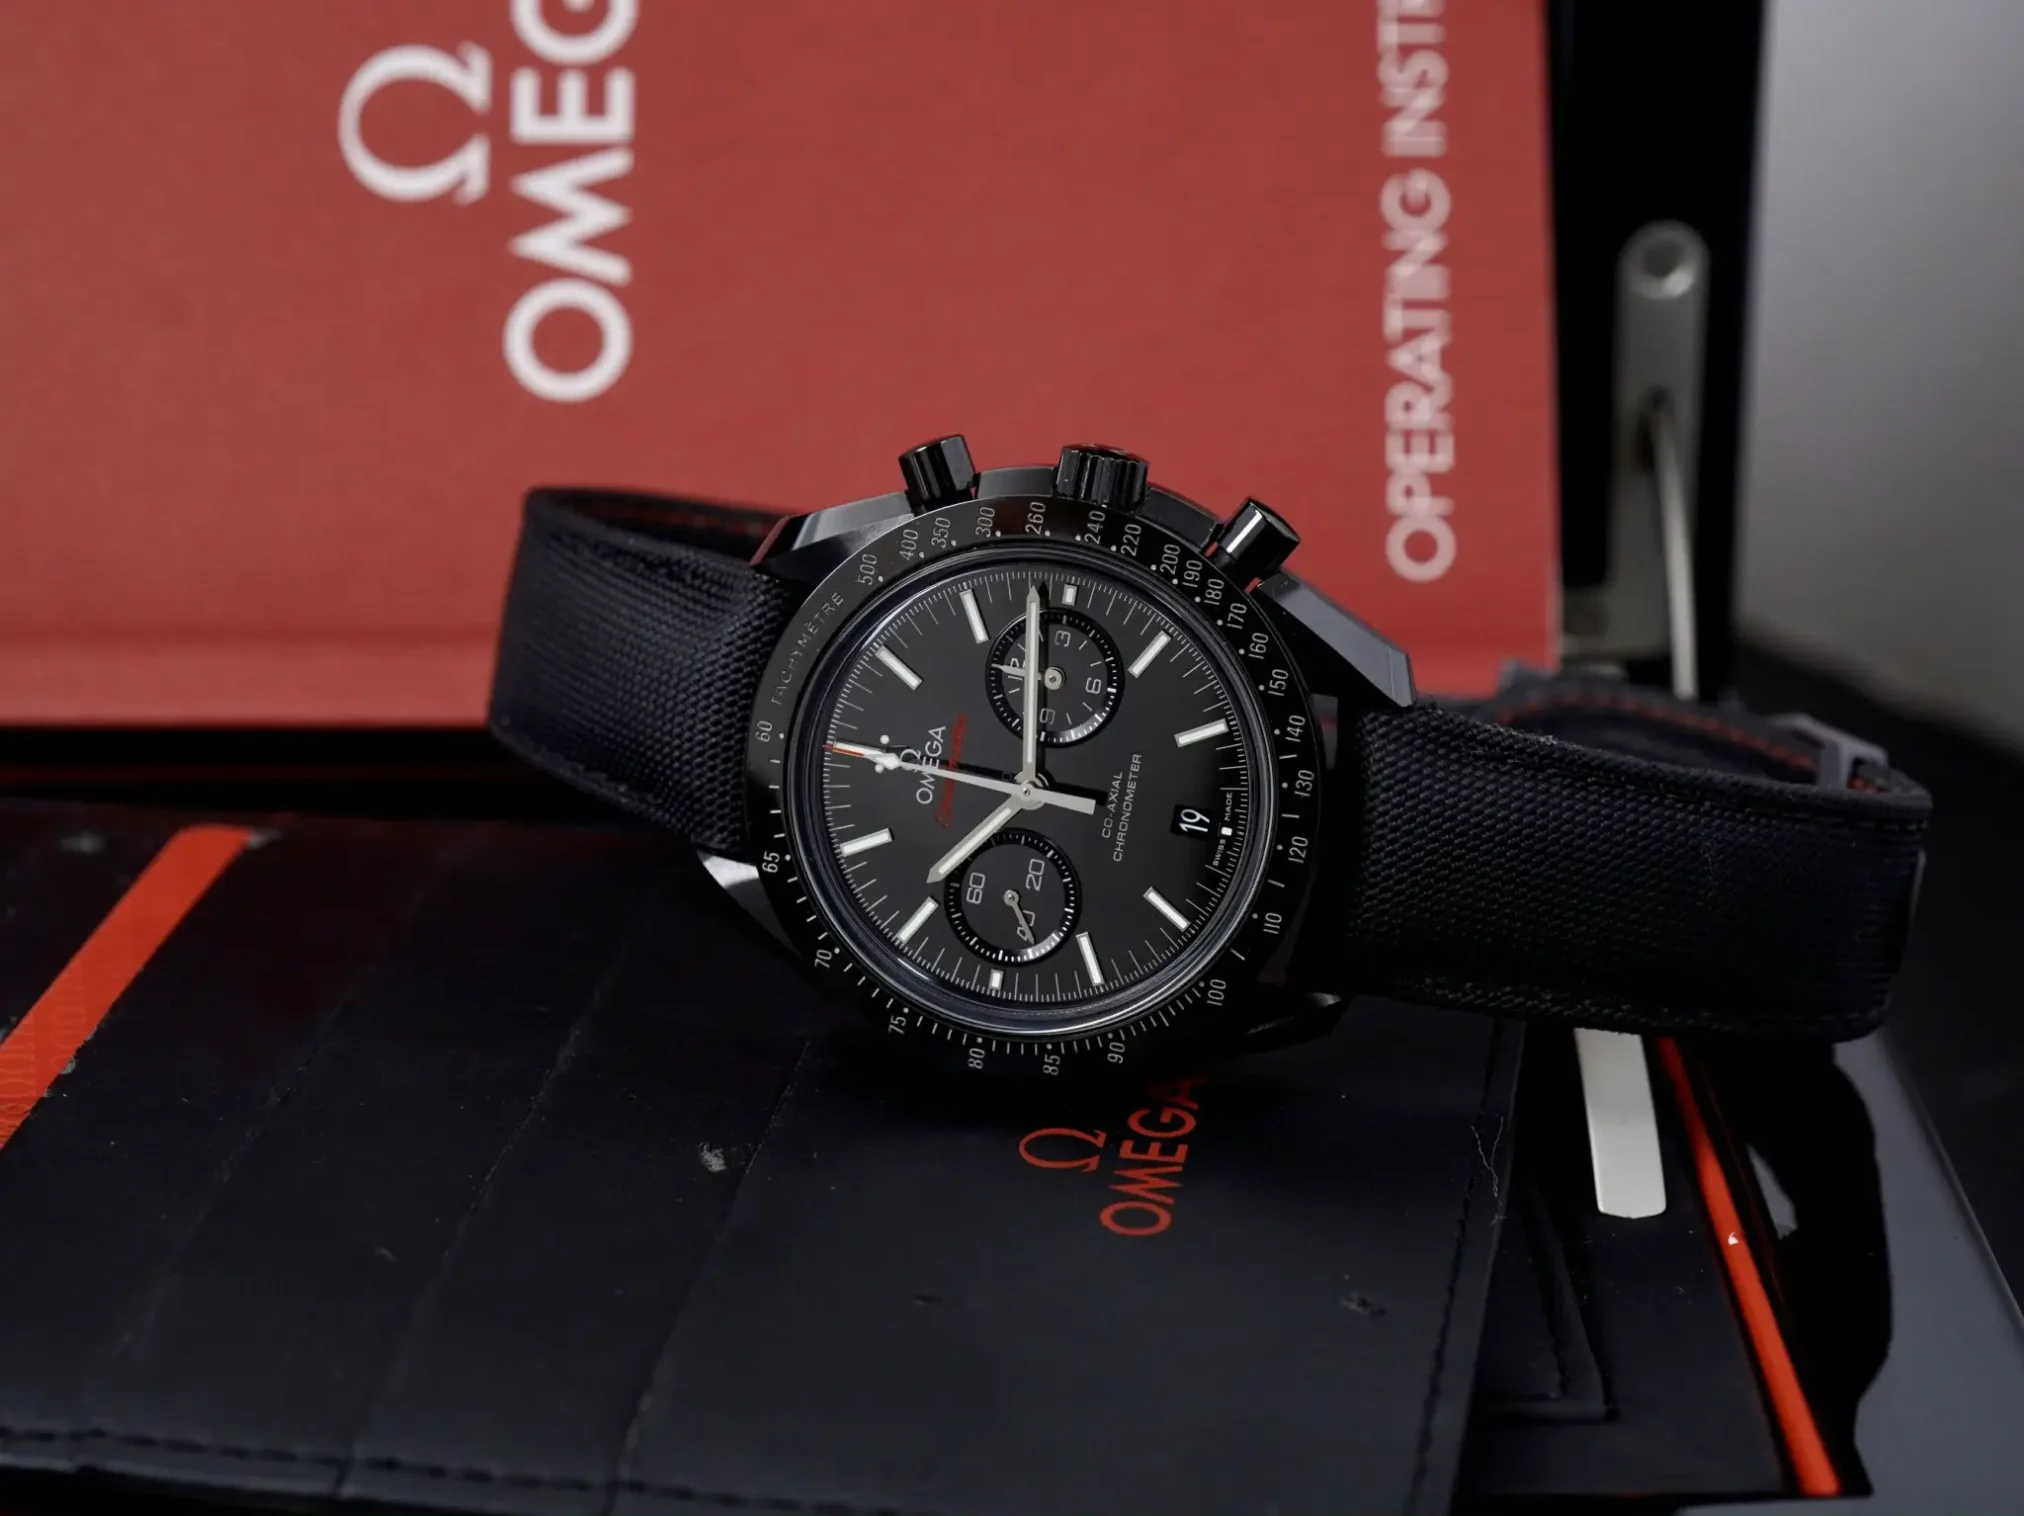 Đồng hồ Omega Speed Master Dark Side Of The Moon 311.92.44.51.01.007 mặt số màu đen. Thiết kế lộ cơ. Dây đeo bằng vải. Thân vỏ bằng ceramic.